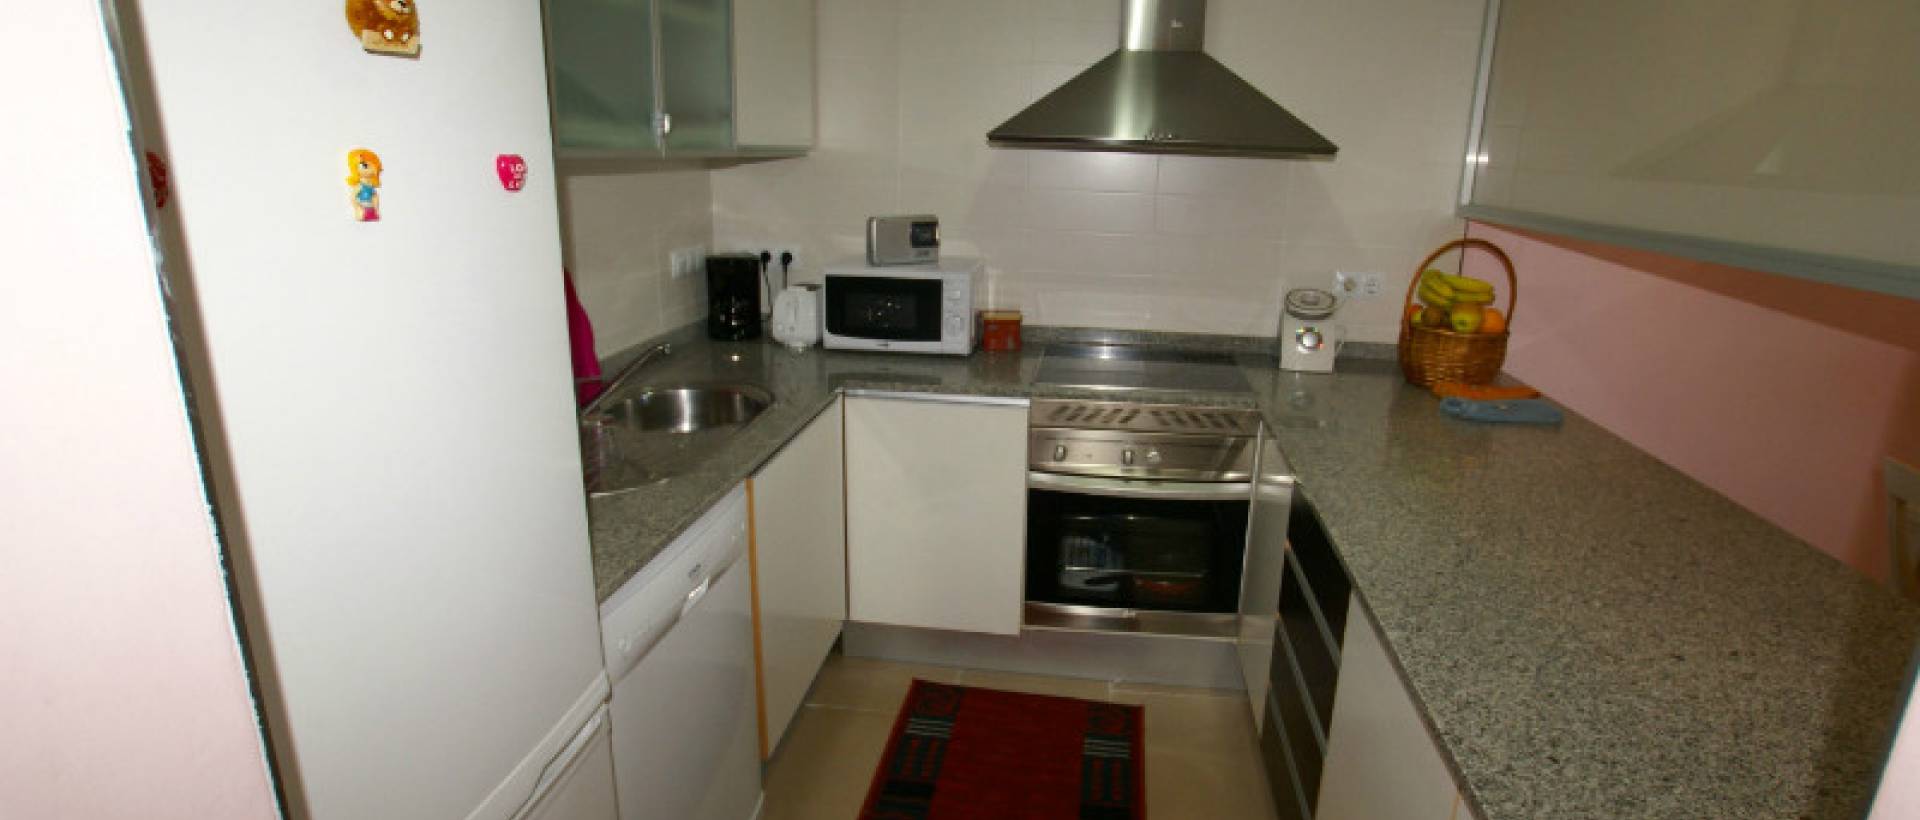 kitchen-apartment-santiado-de-la-ribera-murcia